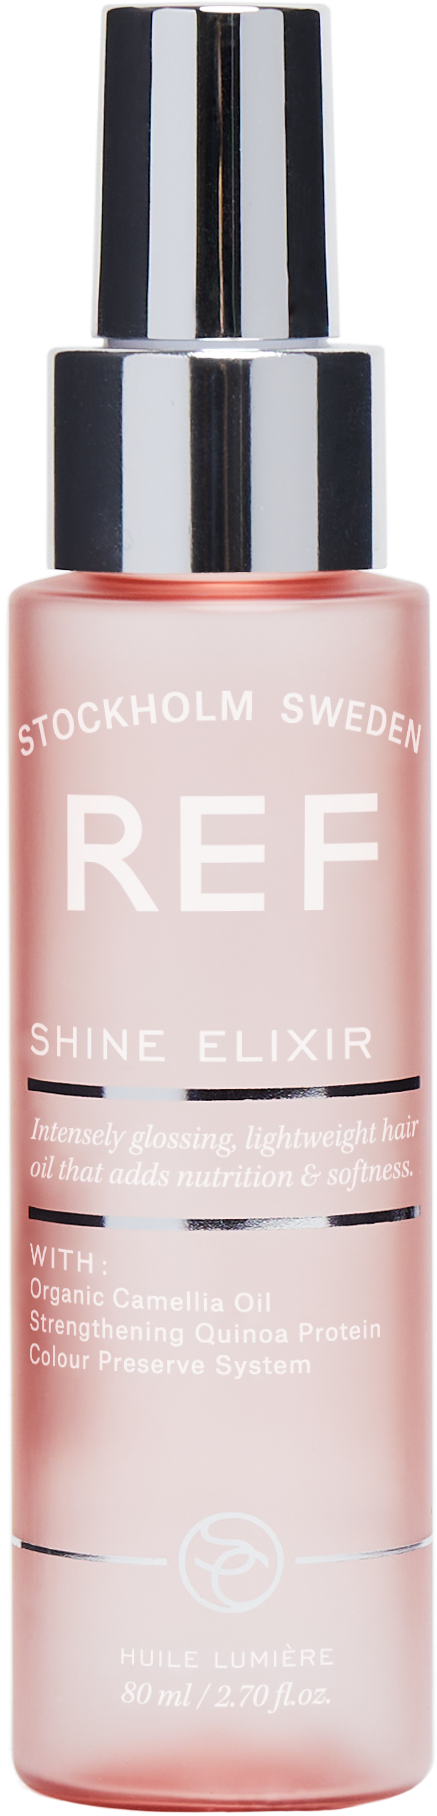 REF Shine Elixir 80ml